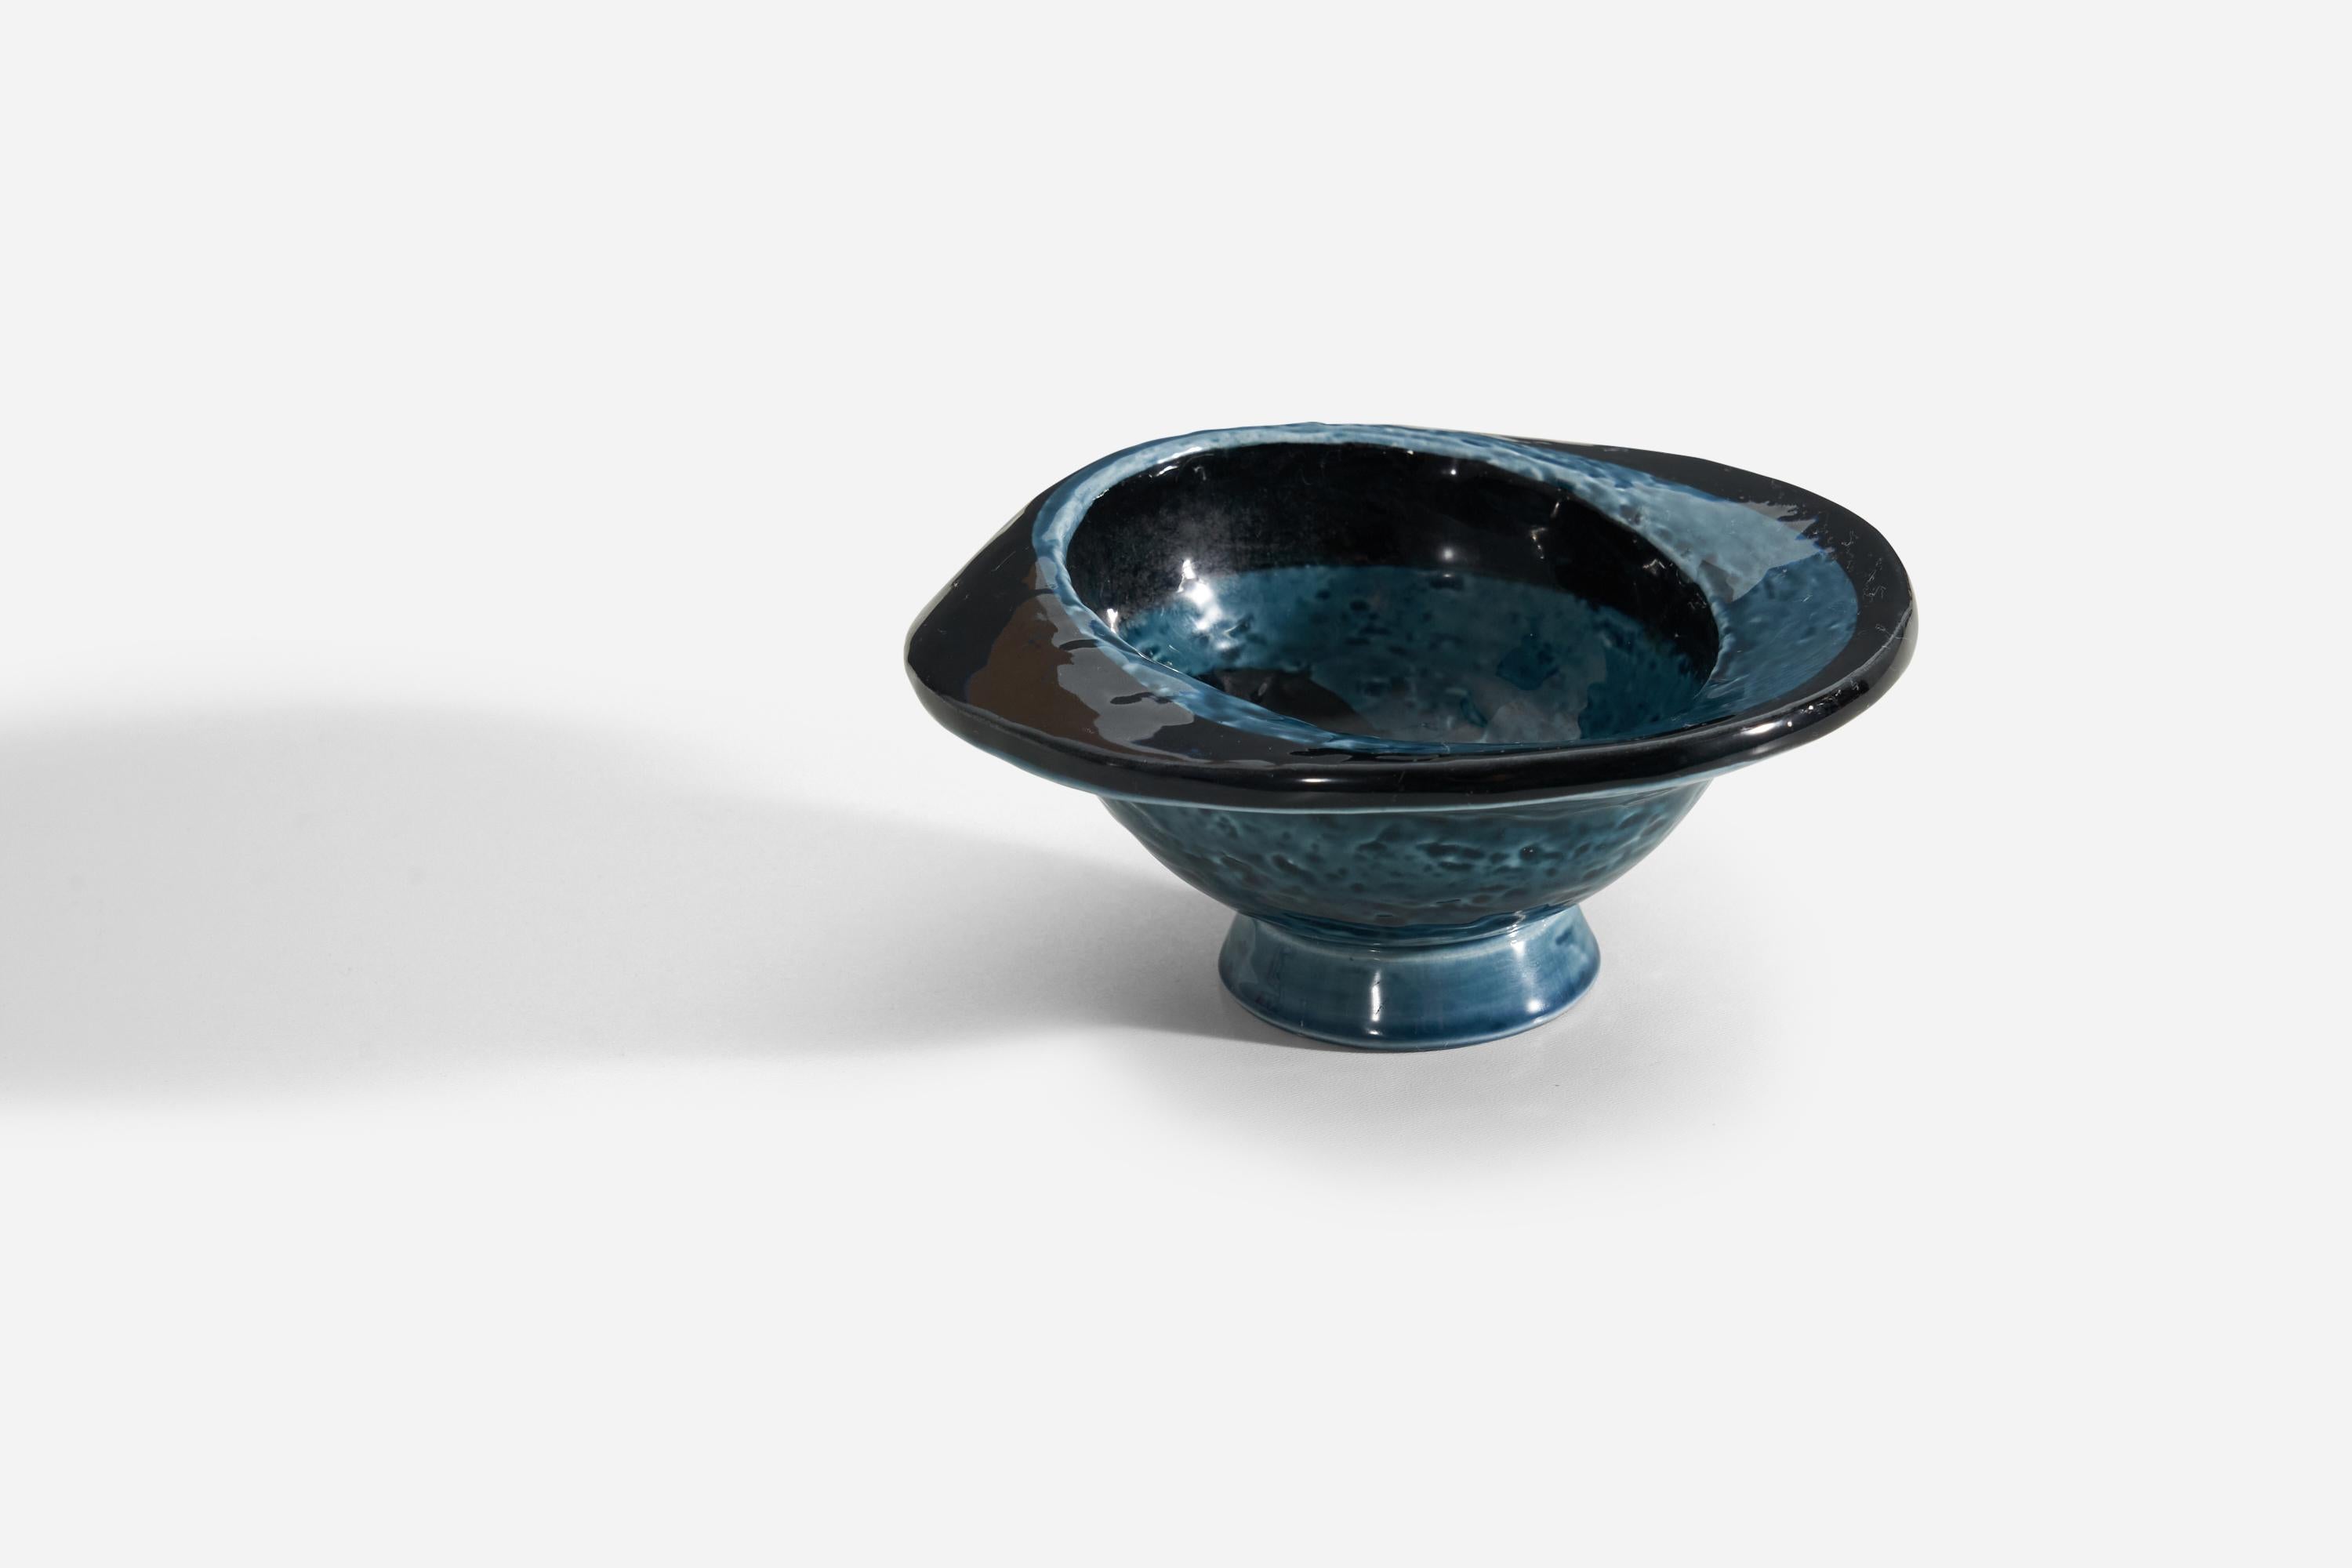 Un bol en glaçure bleue et noire conçu par Vilhelm Bjerke-Petersen, pour Rörstrand, Suède, vers les années 1960. 

.